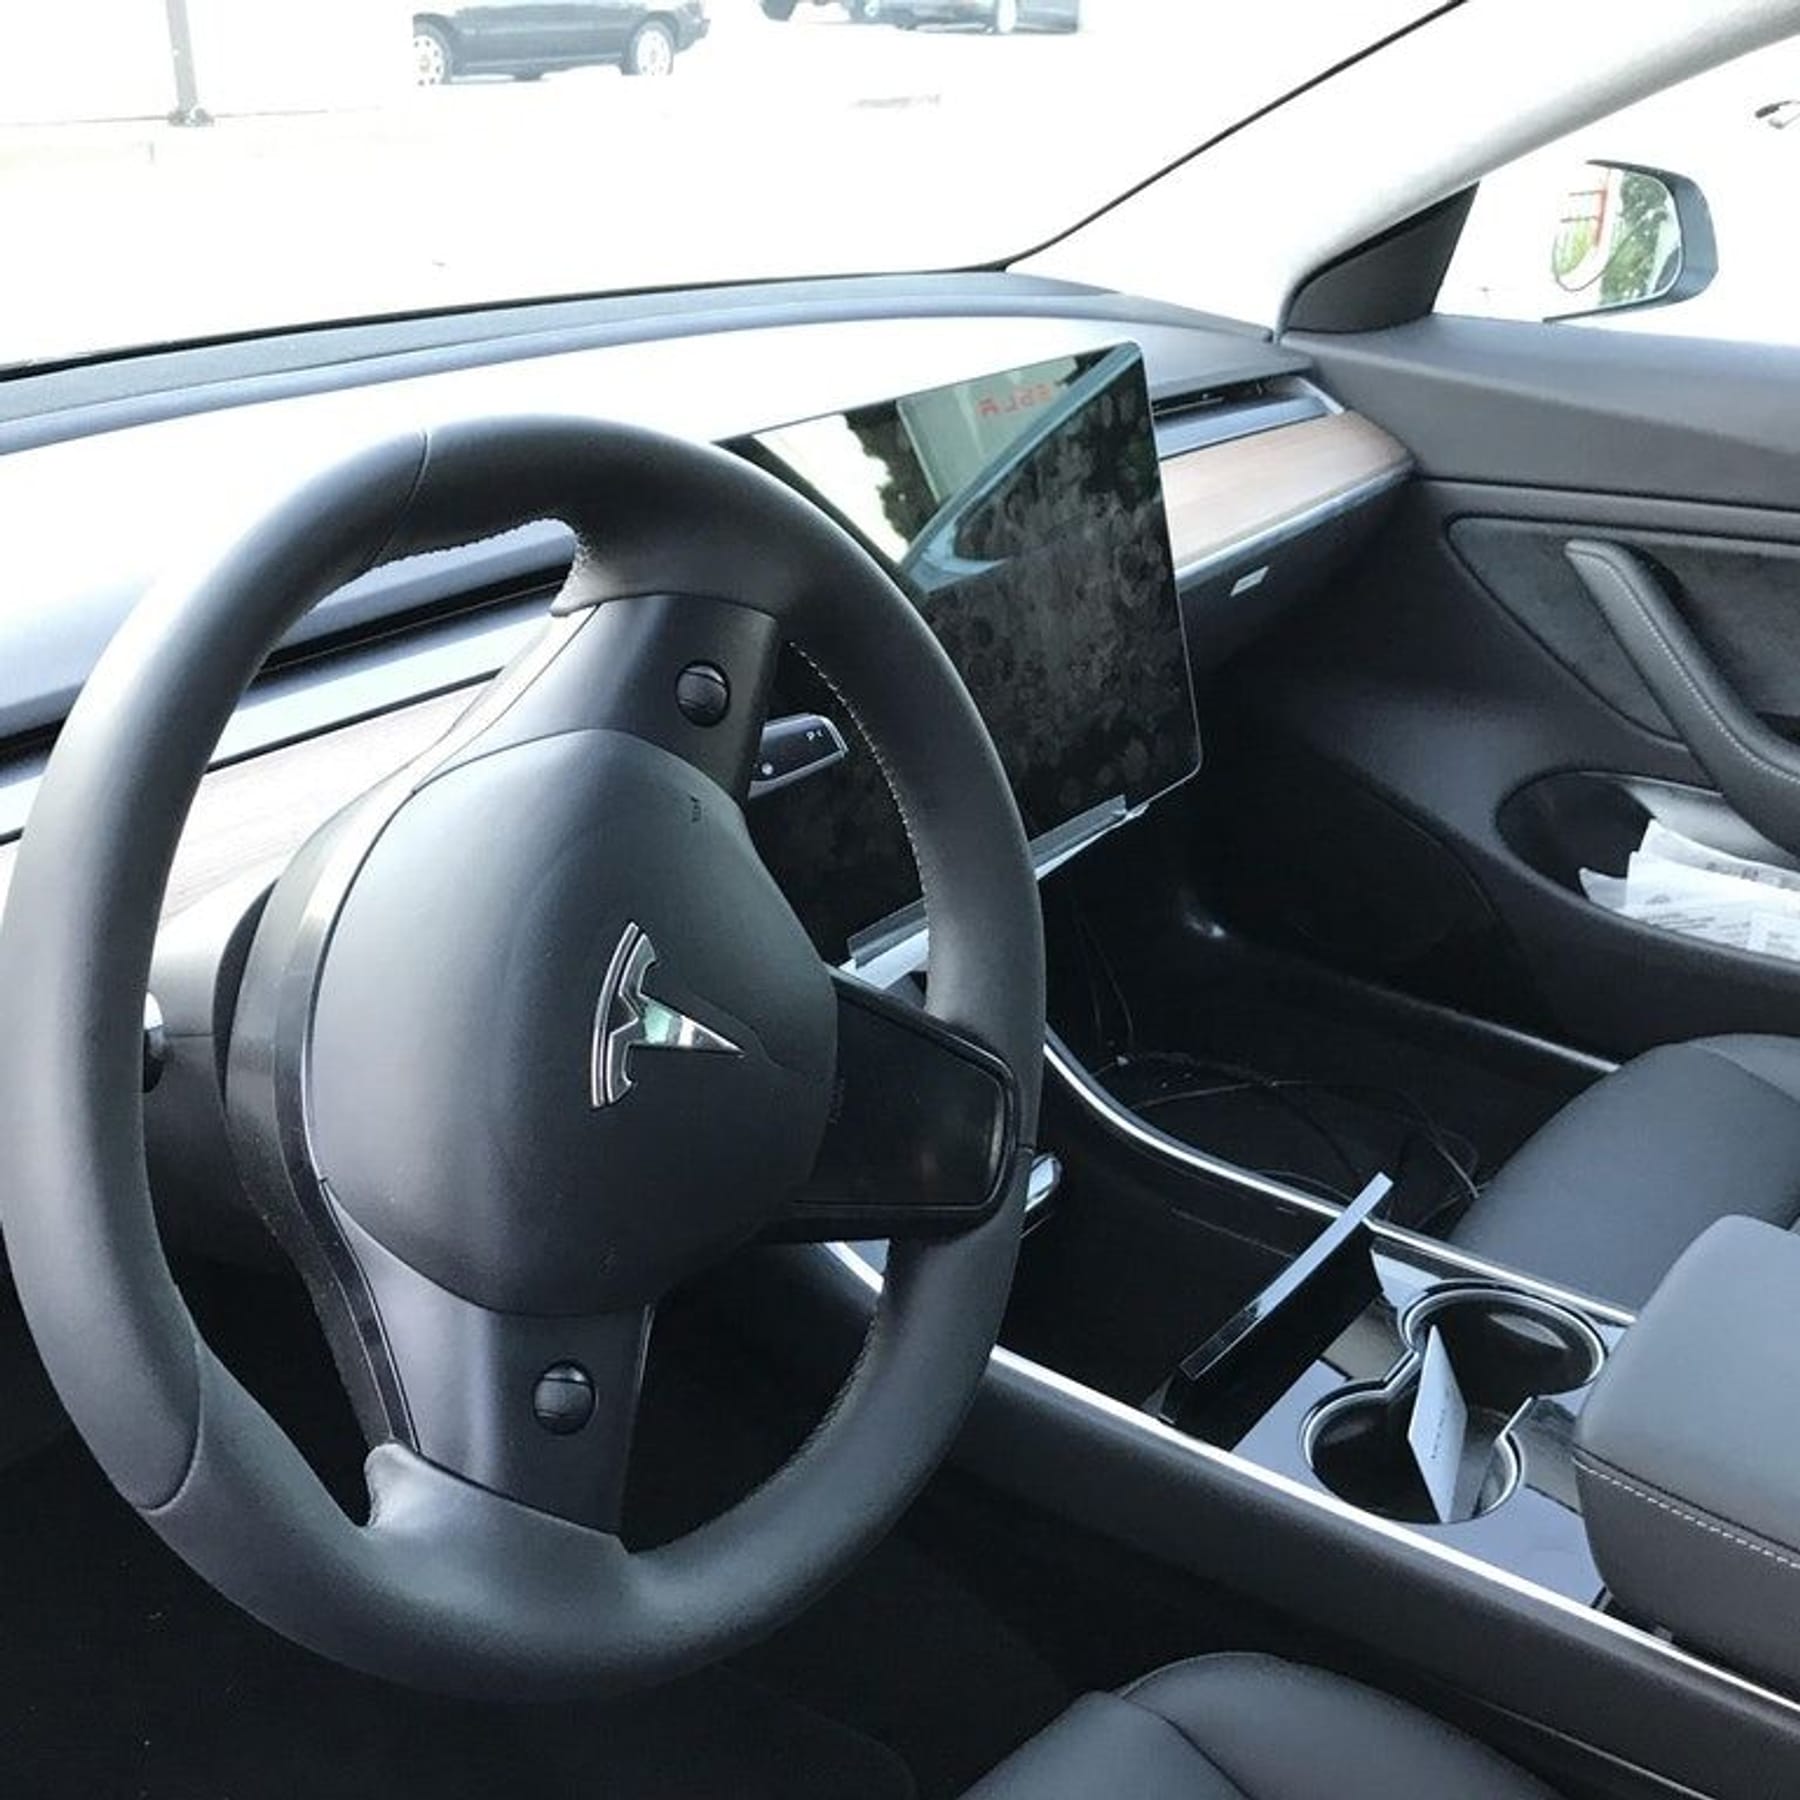 Geheime Fotos des kommenden Tesla Model 3 aufgetaucht